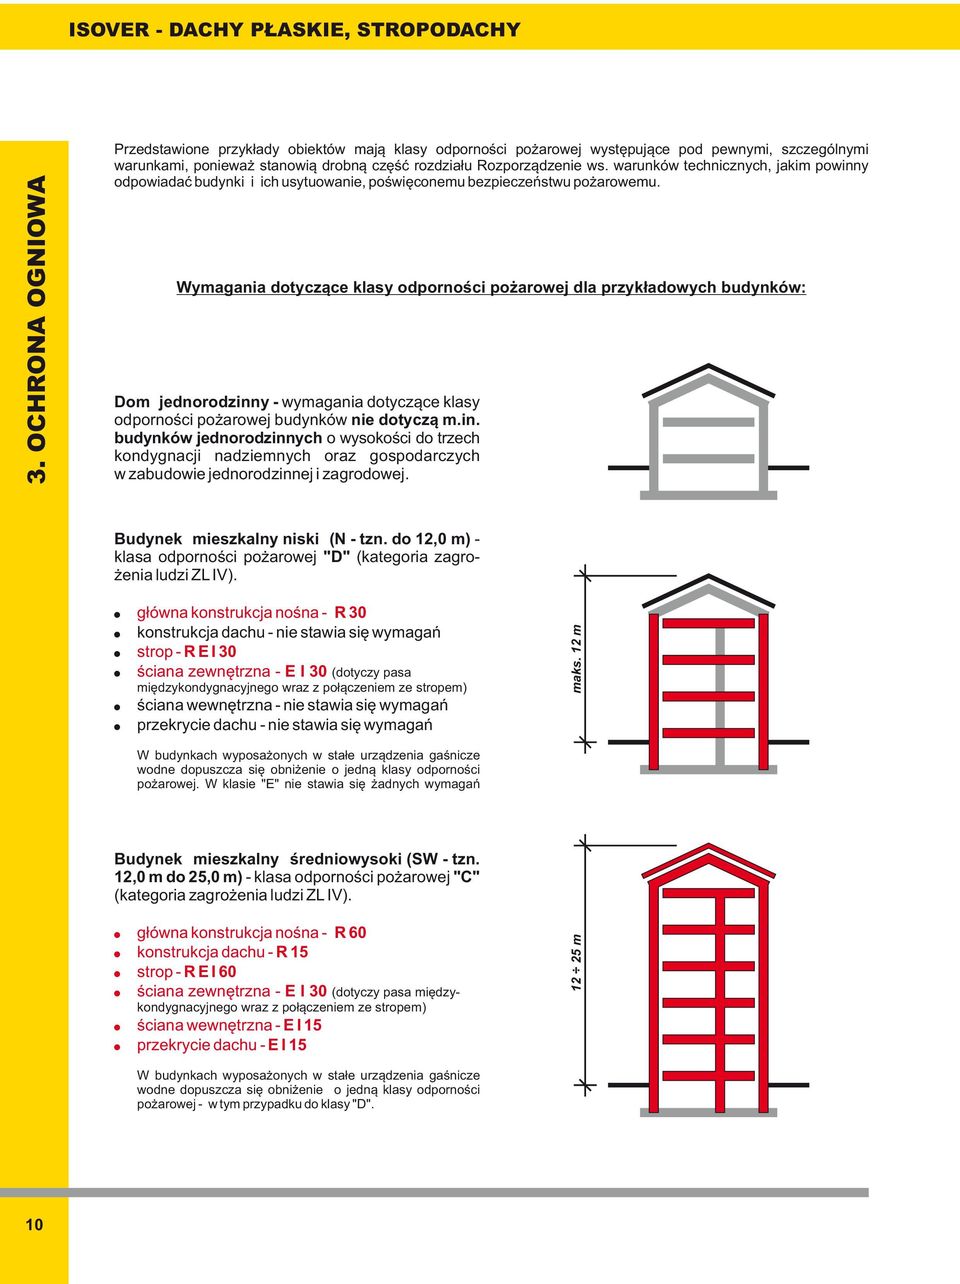 Wymagania dotyczące klasy odporności pożarowej dla przykładowych budynków: Dom jednorodzinn